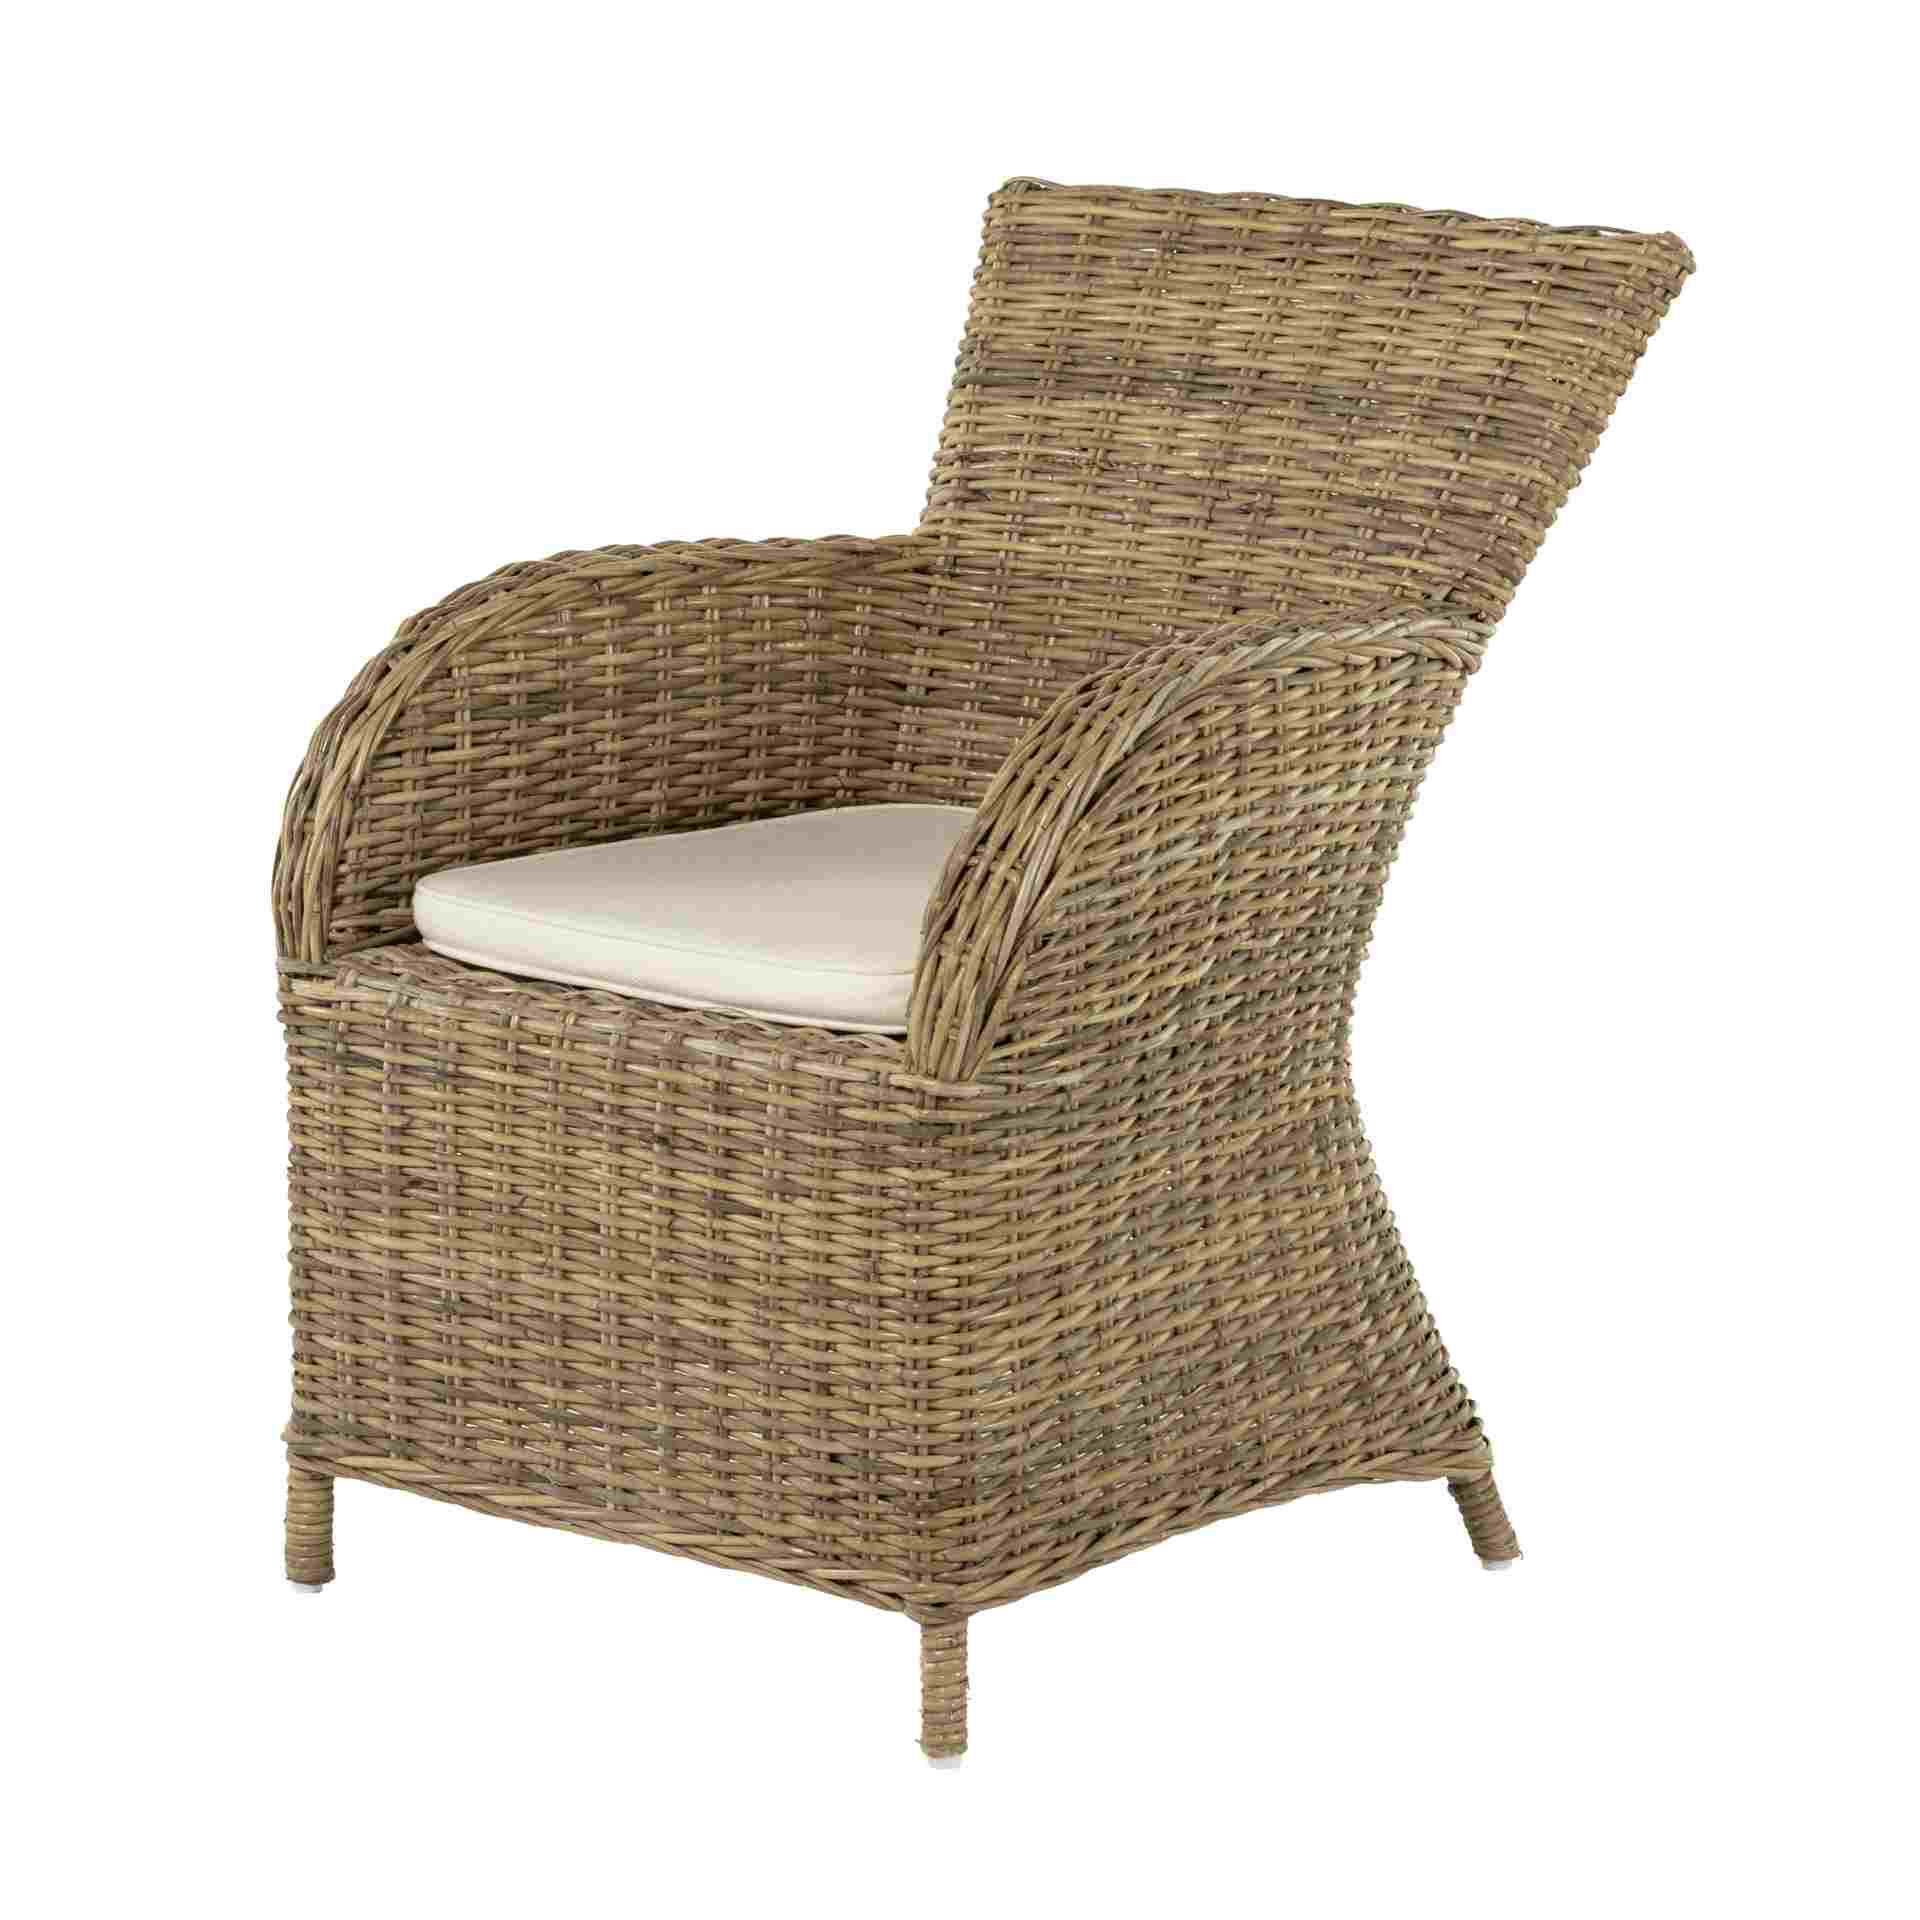 Der Esszimmerstuhl Rook überzeugt mit seinem Landhaus Stil. Gefertigt wurde er aus Rattan, welches einen natürlichen Farbton besitzt. Der Stuhl verfügt über eine Armlehne und ist im 2er-Set erhältlich. Die Sitzhöhe beträgt beträgt 43 cm.